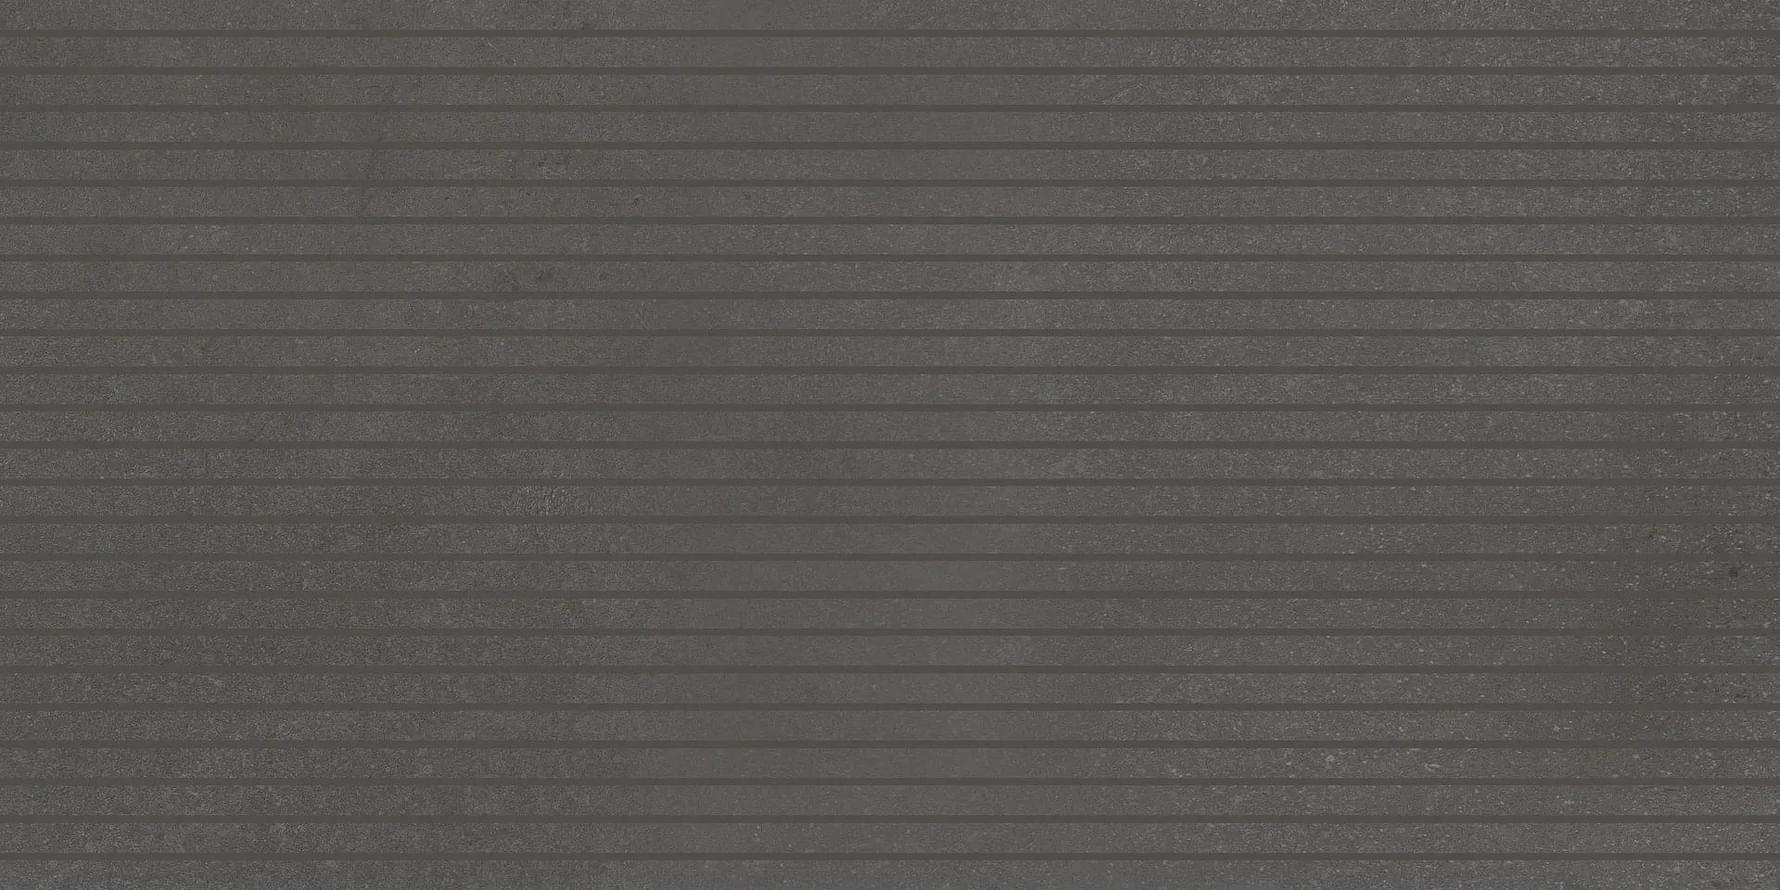 Settecento Evoque Bacchette Coal 1x60 Foglio 29.9x60